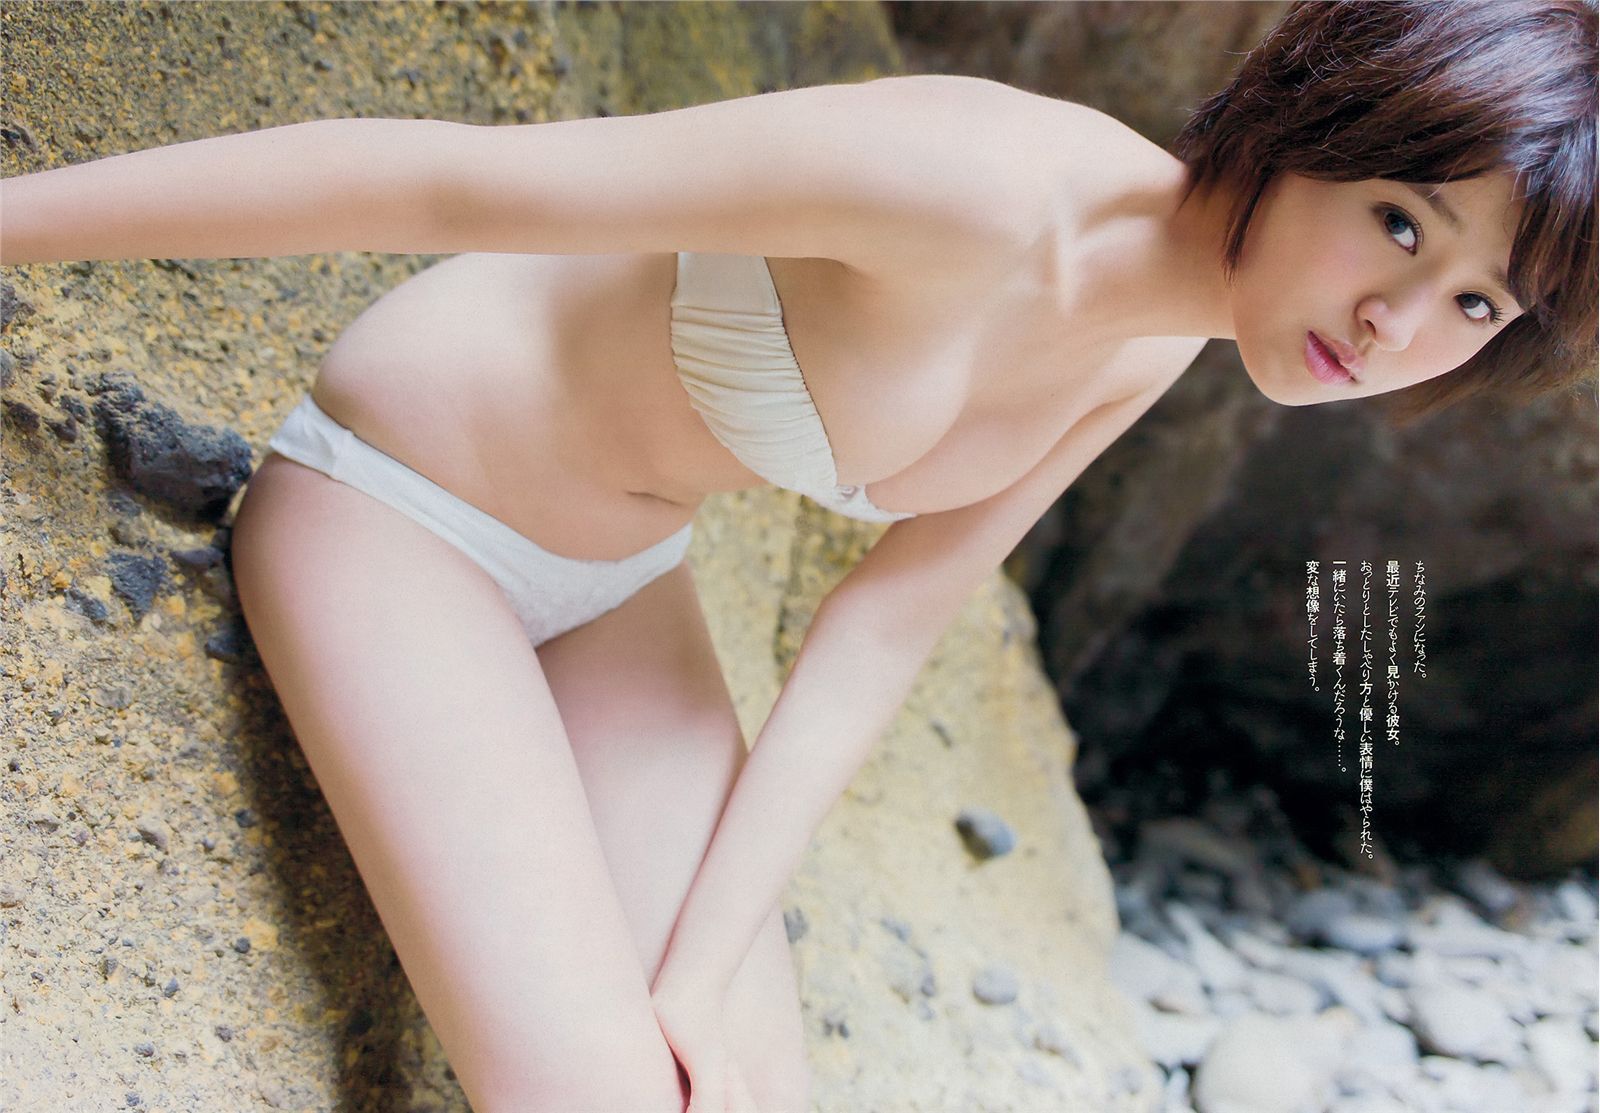 [weekly Playboy] No.23 guitou taocai Shangxi